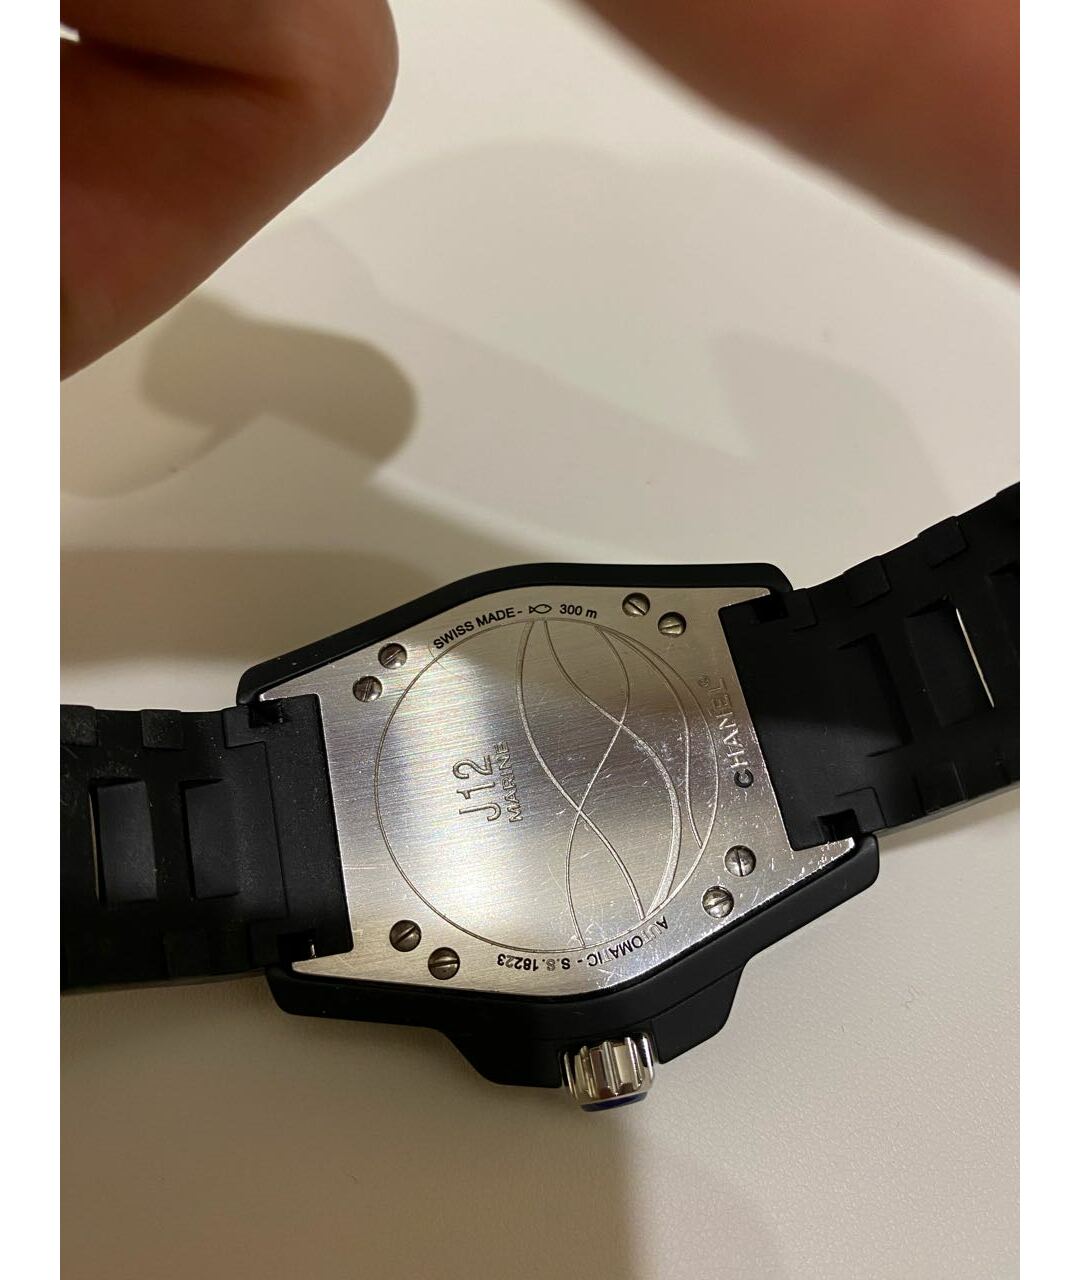 CHANEL PRE-OWNED Черные керамические часы, фото 2